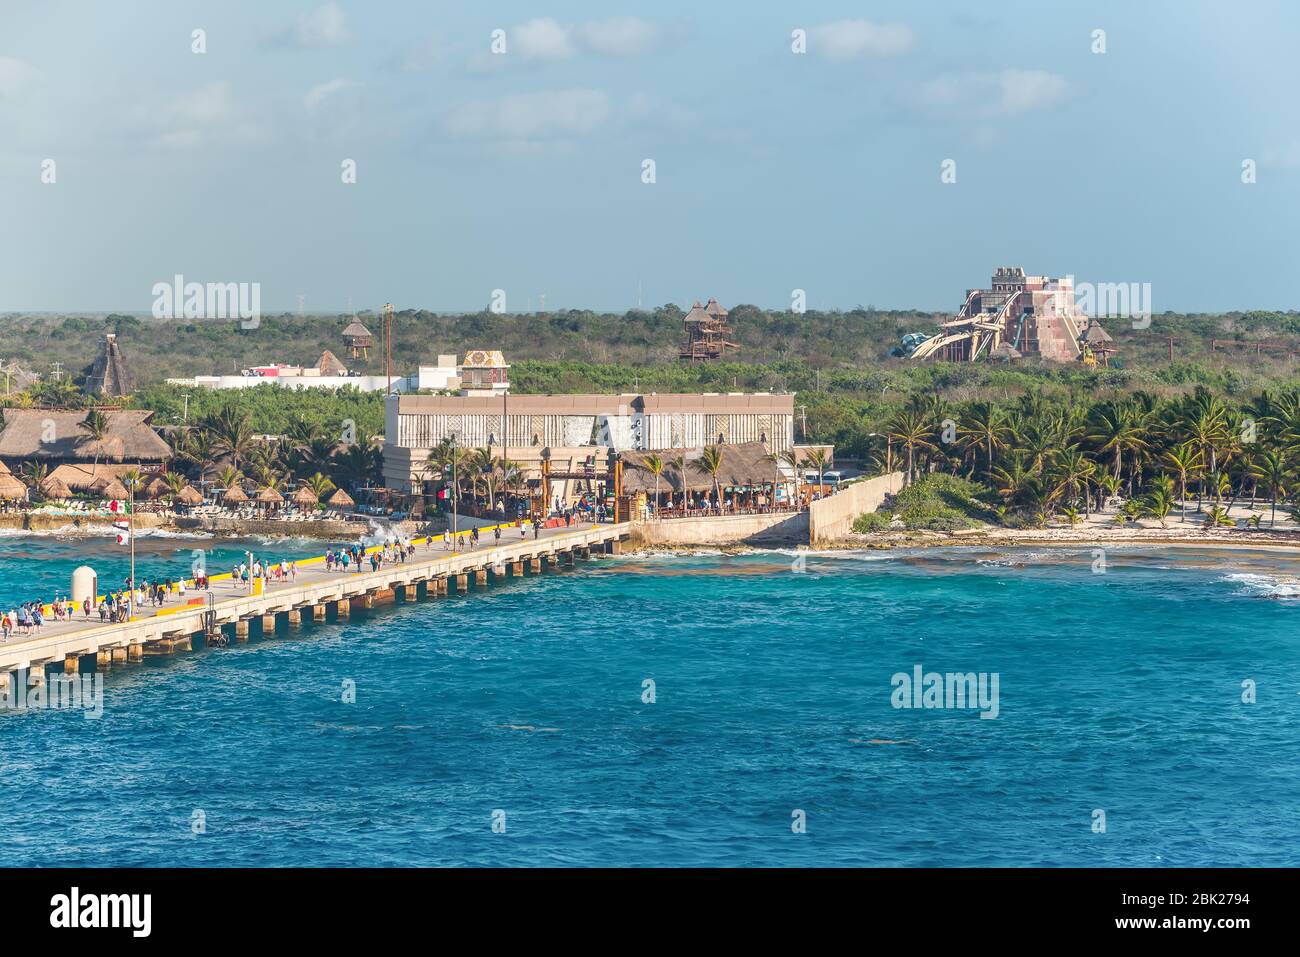 Costa Maya, Mexiko - 25. April 2019: Tropisches Resort mit Pier am Kreuzfahrthafen von Costa Maya. Die Touristenregion ist ein beliebter karibischer Kreuzfahrtziel Stockfoto